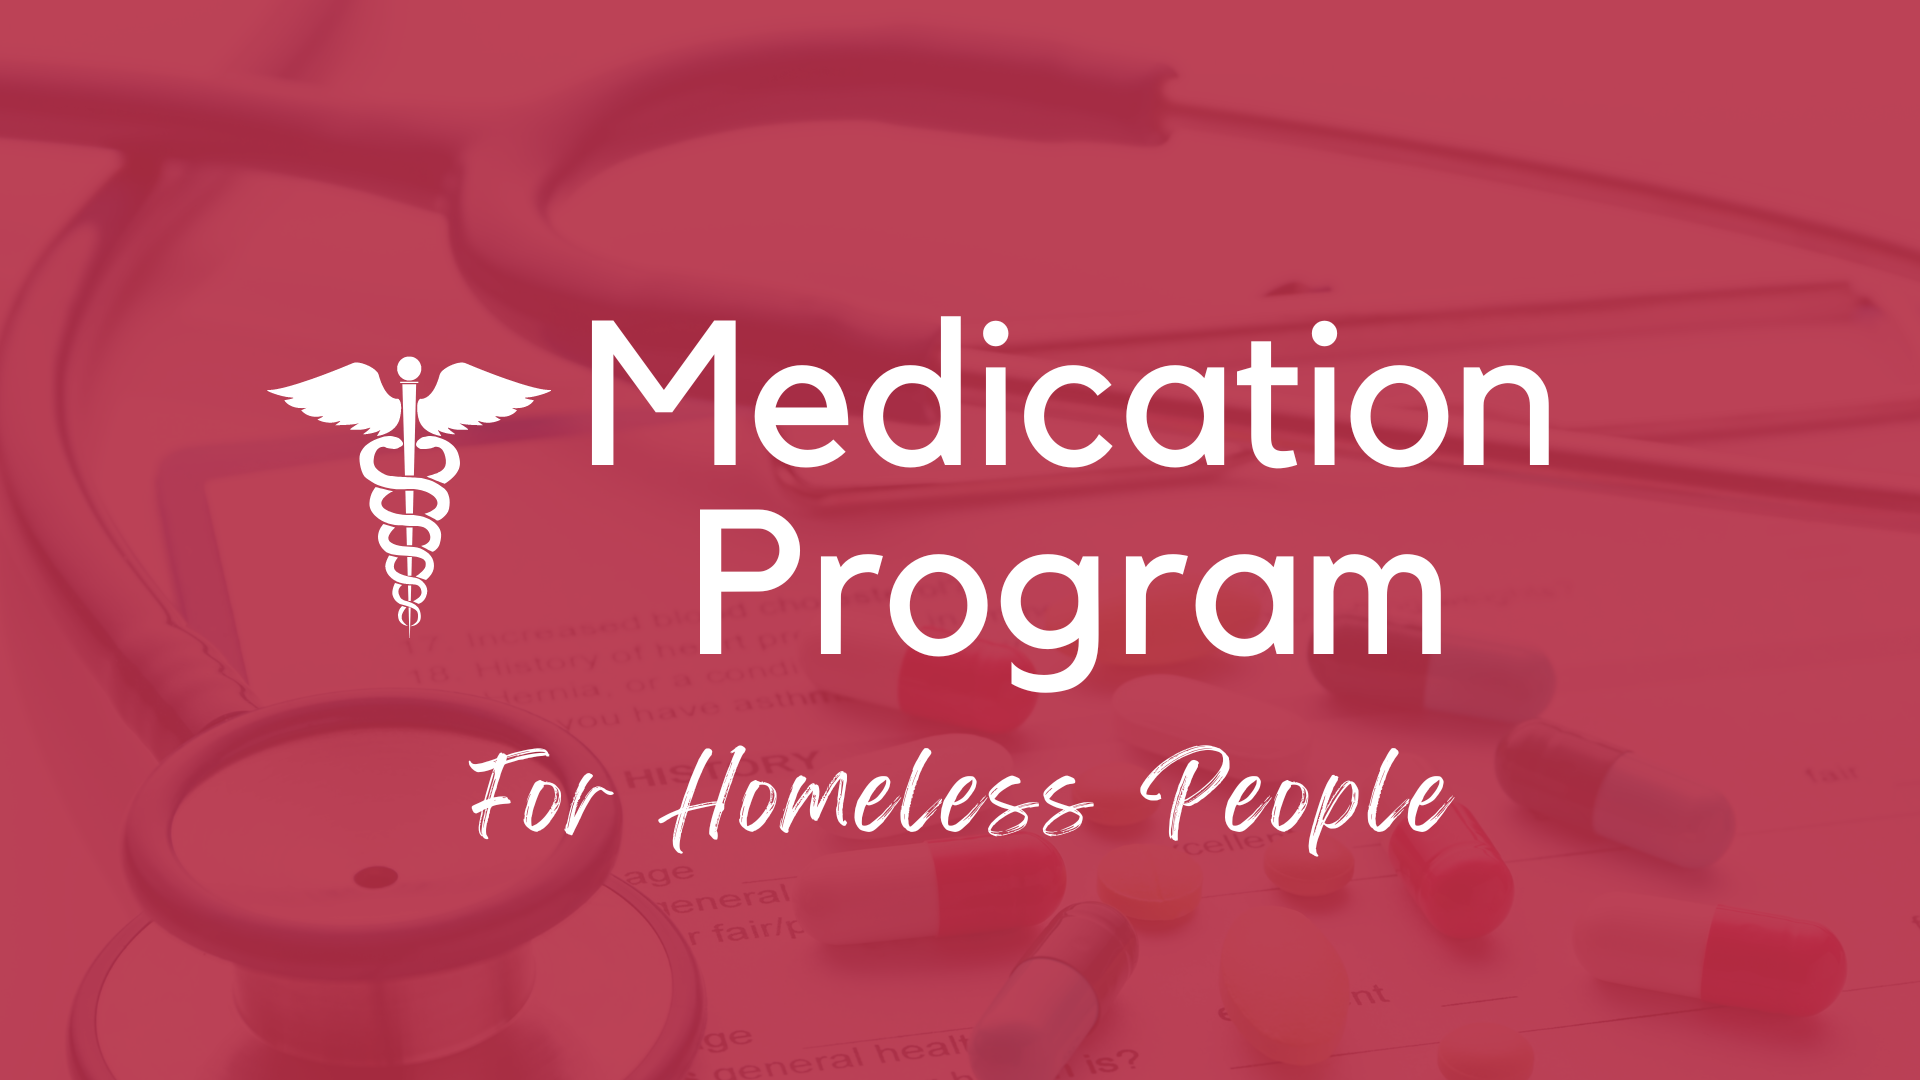 Medication Program For Homeless People